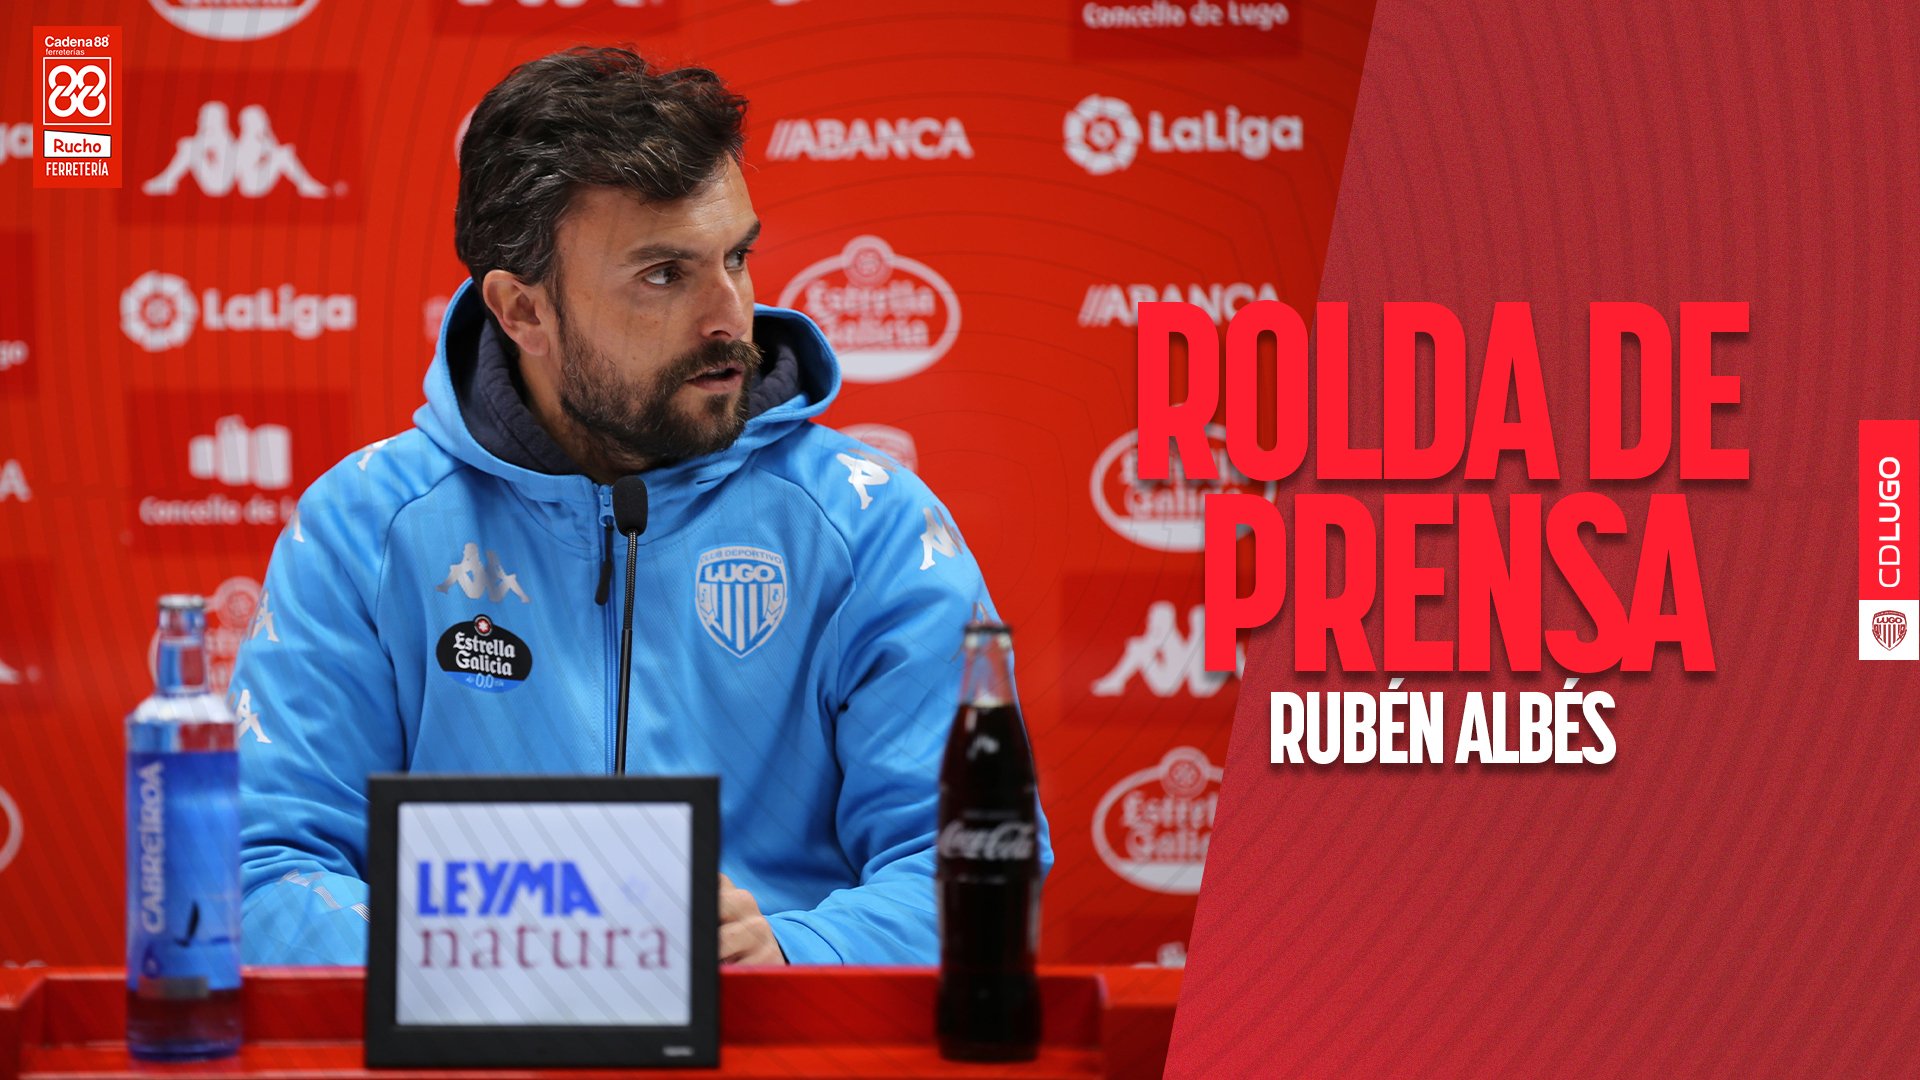 Rubén Albés: "Creo que el modelo del Tenerife puede venirnos bien. Vamos a hacer un buen partido allí"